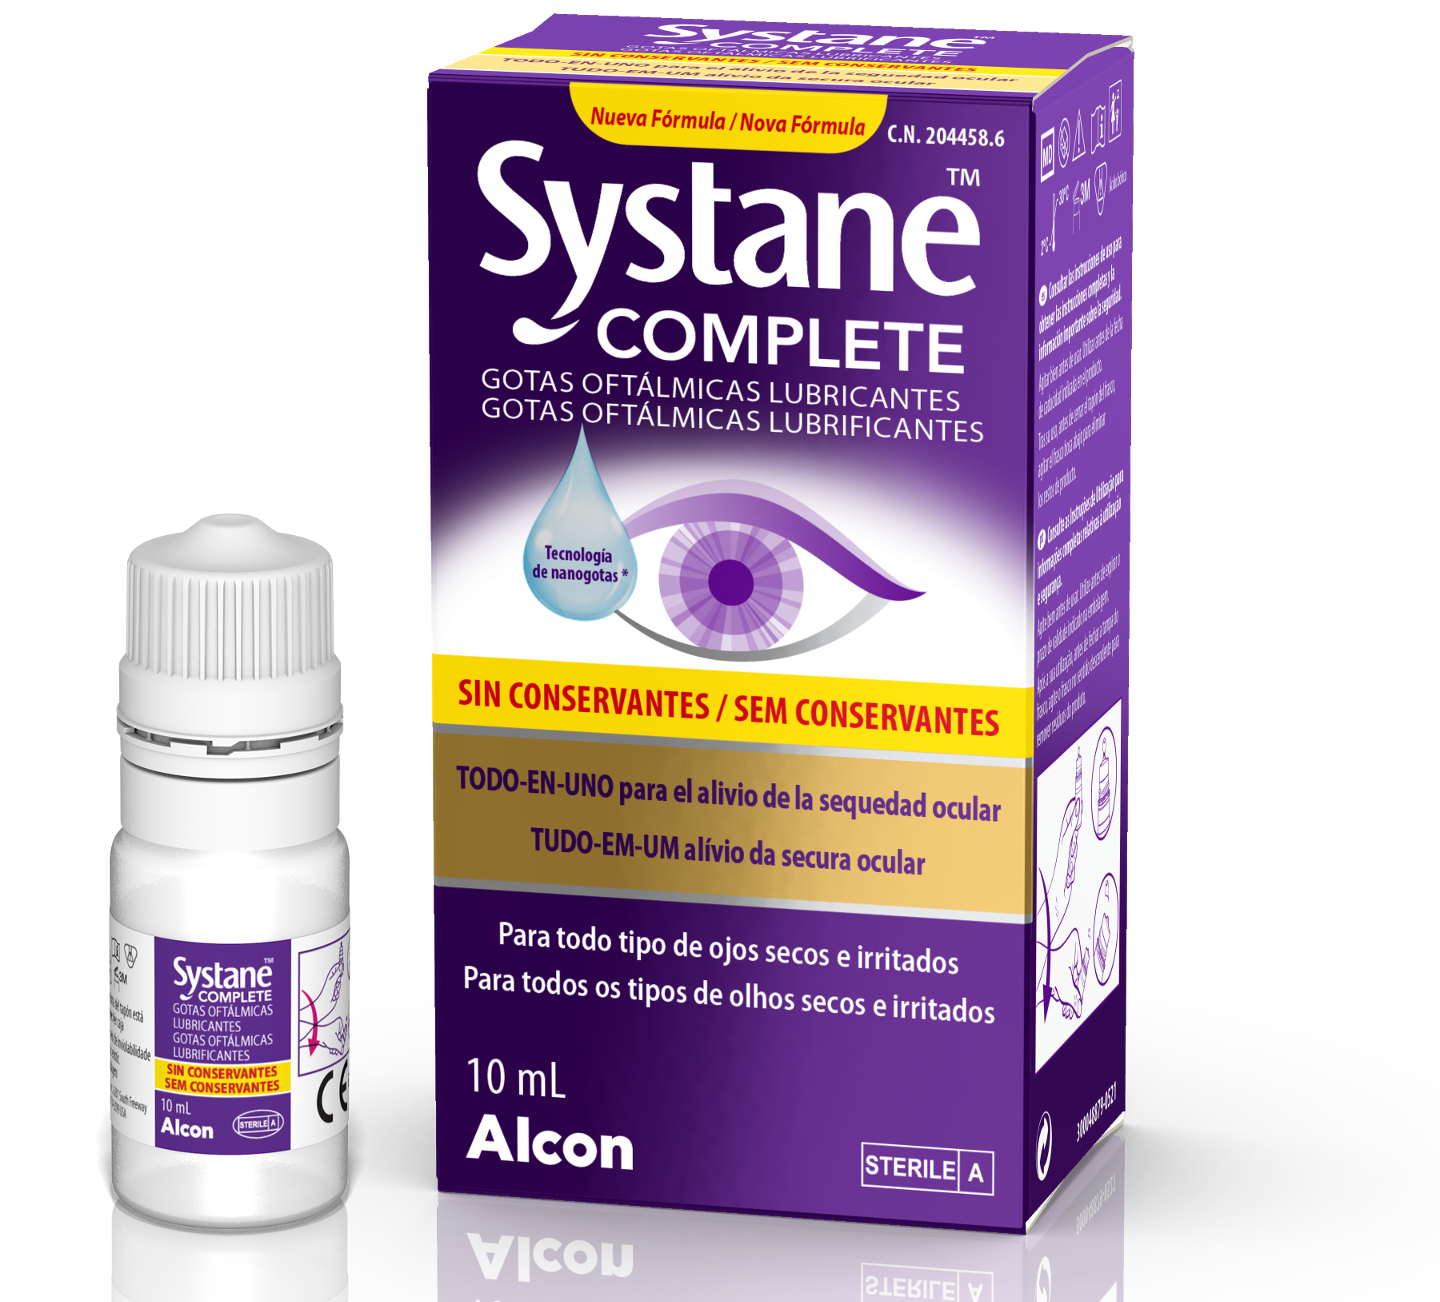 Alcon lanza Systane COMPLETE sin conservantes, las gotas oftalmológicas  para el alivio de todo tipo de ojo seco